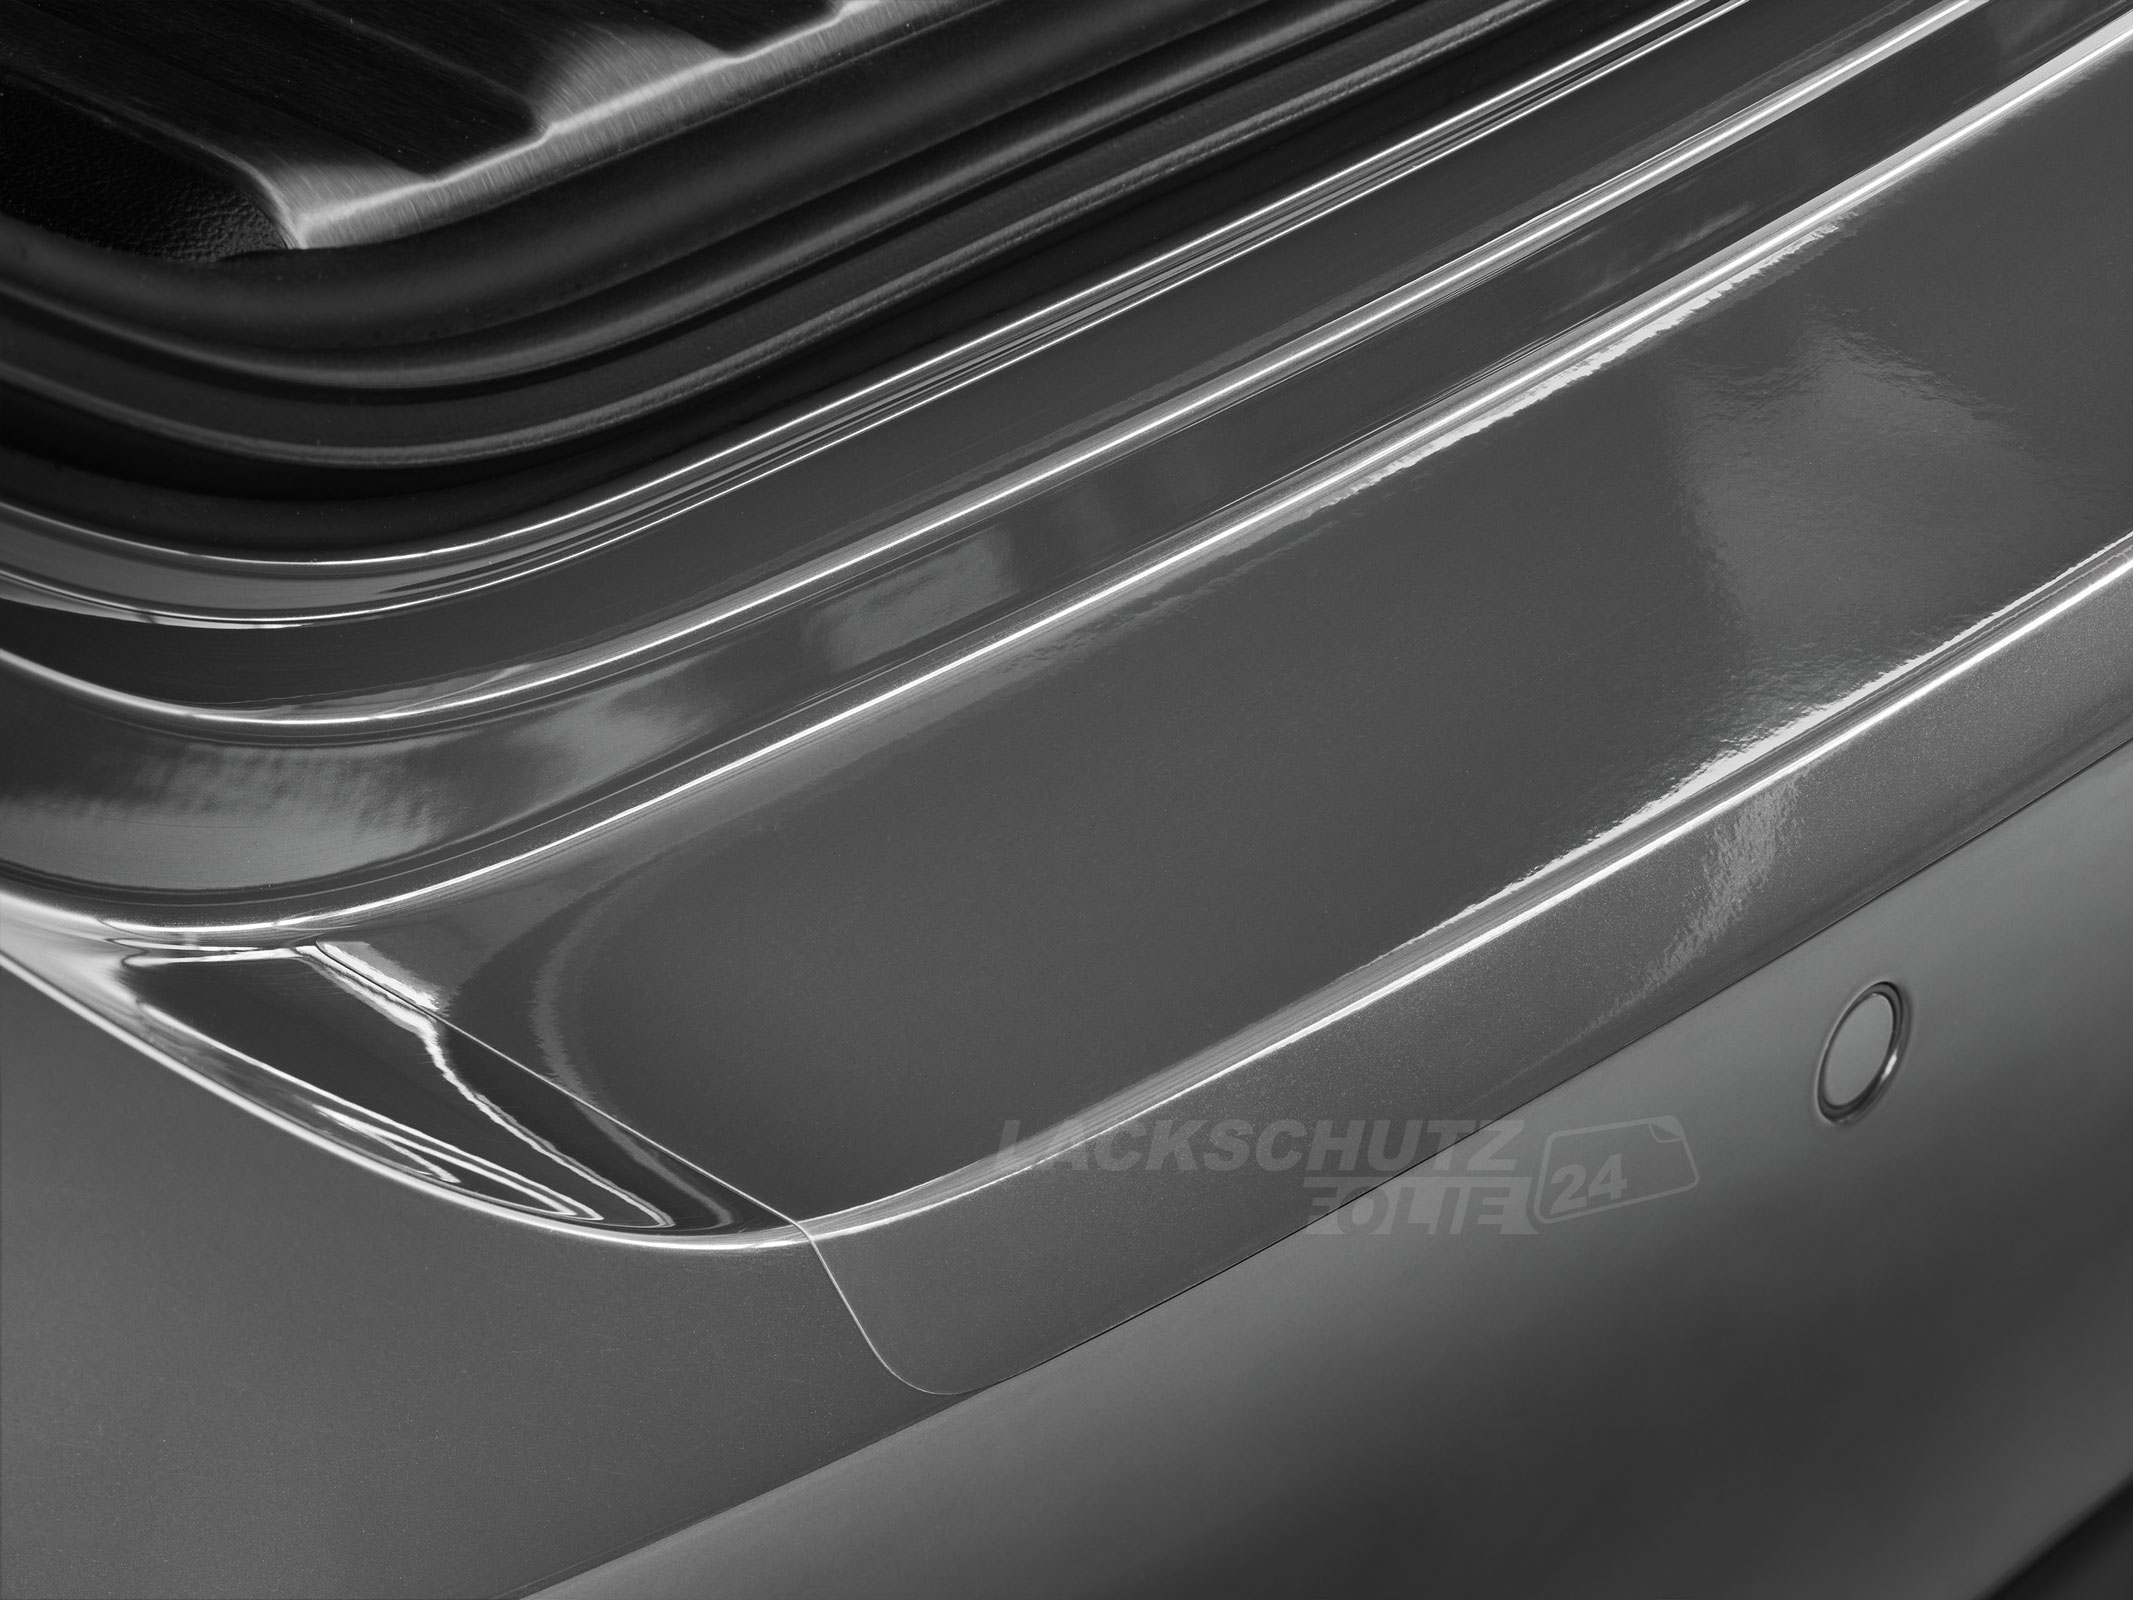 Ladekantenschutzfolie - Transparent Glatt Hochglänzend 150 µm stark für Audi A6 Limousine C7, Typ 4G, inkl. Facelift, BJ 10/2011-2018